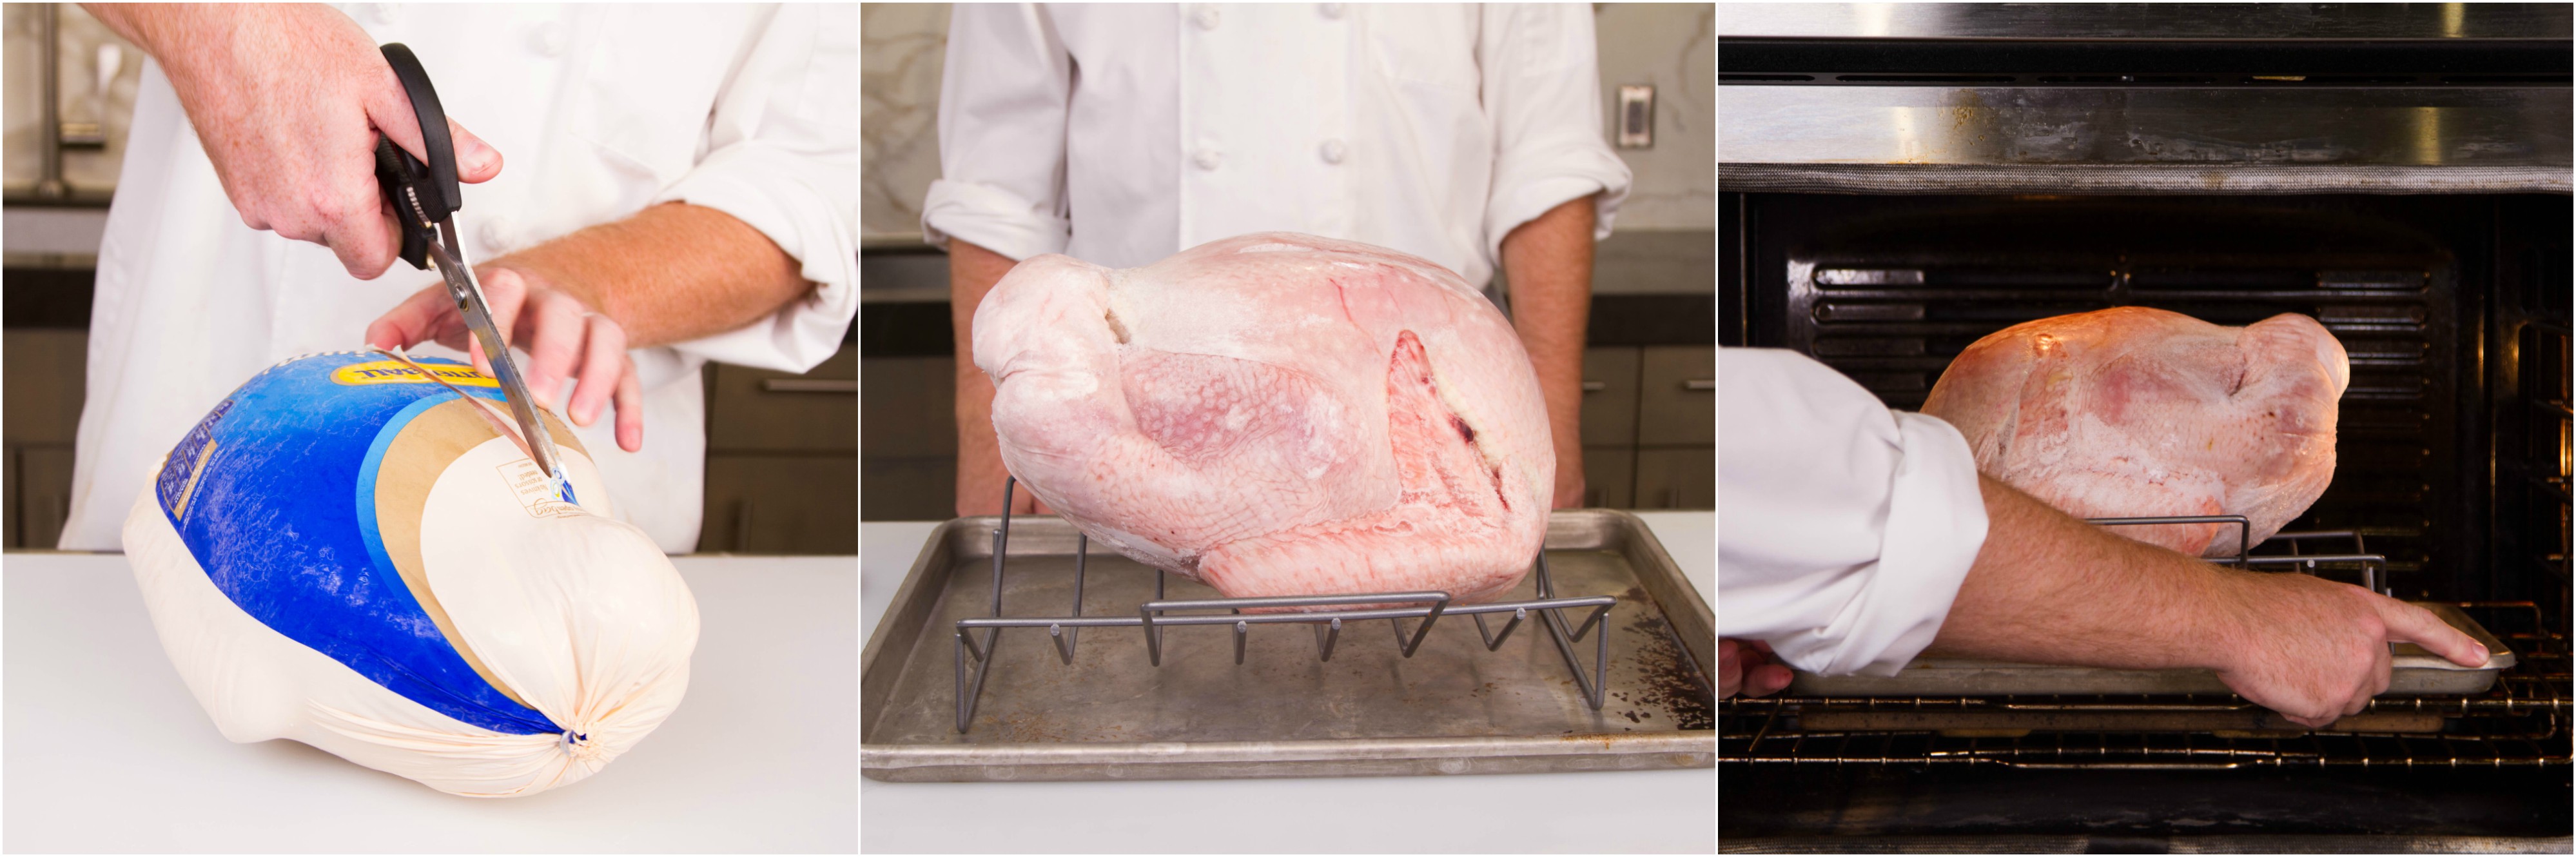 Turkey 911: How to Cook a Frozen Turkey